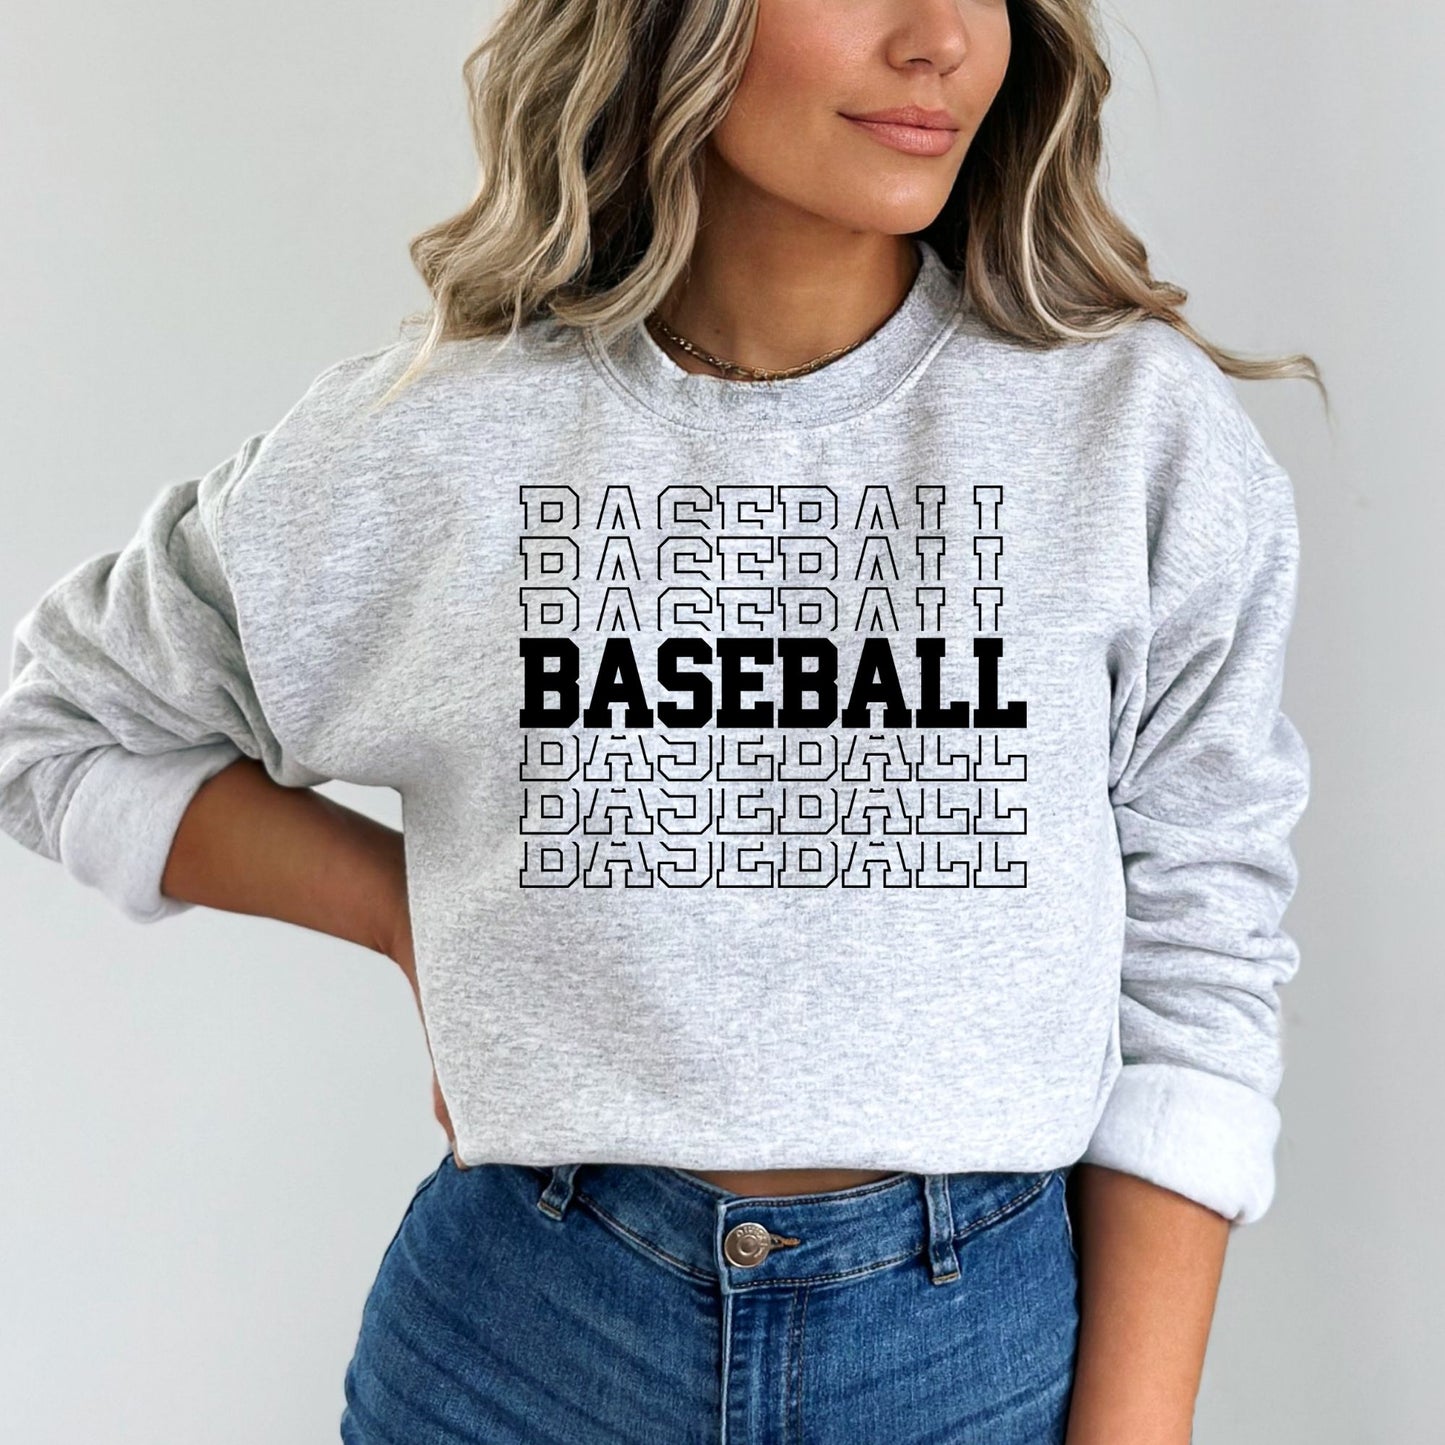 Baseball Sweatshirt